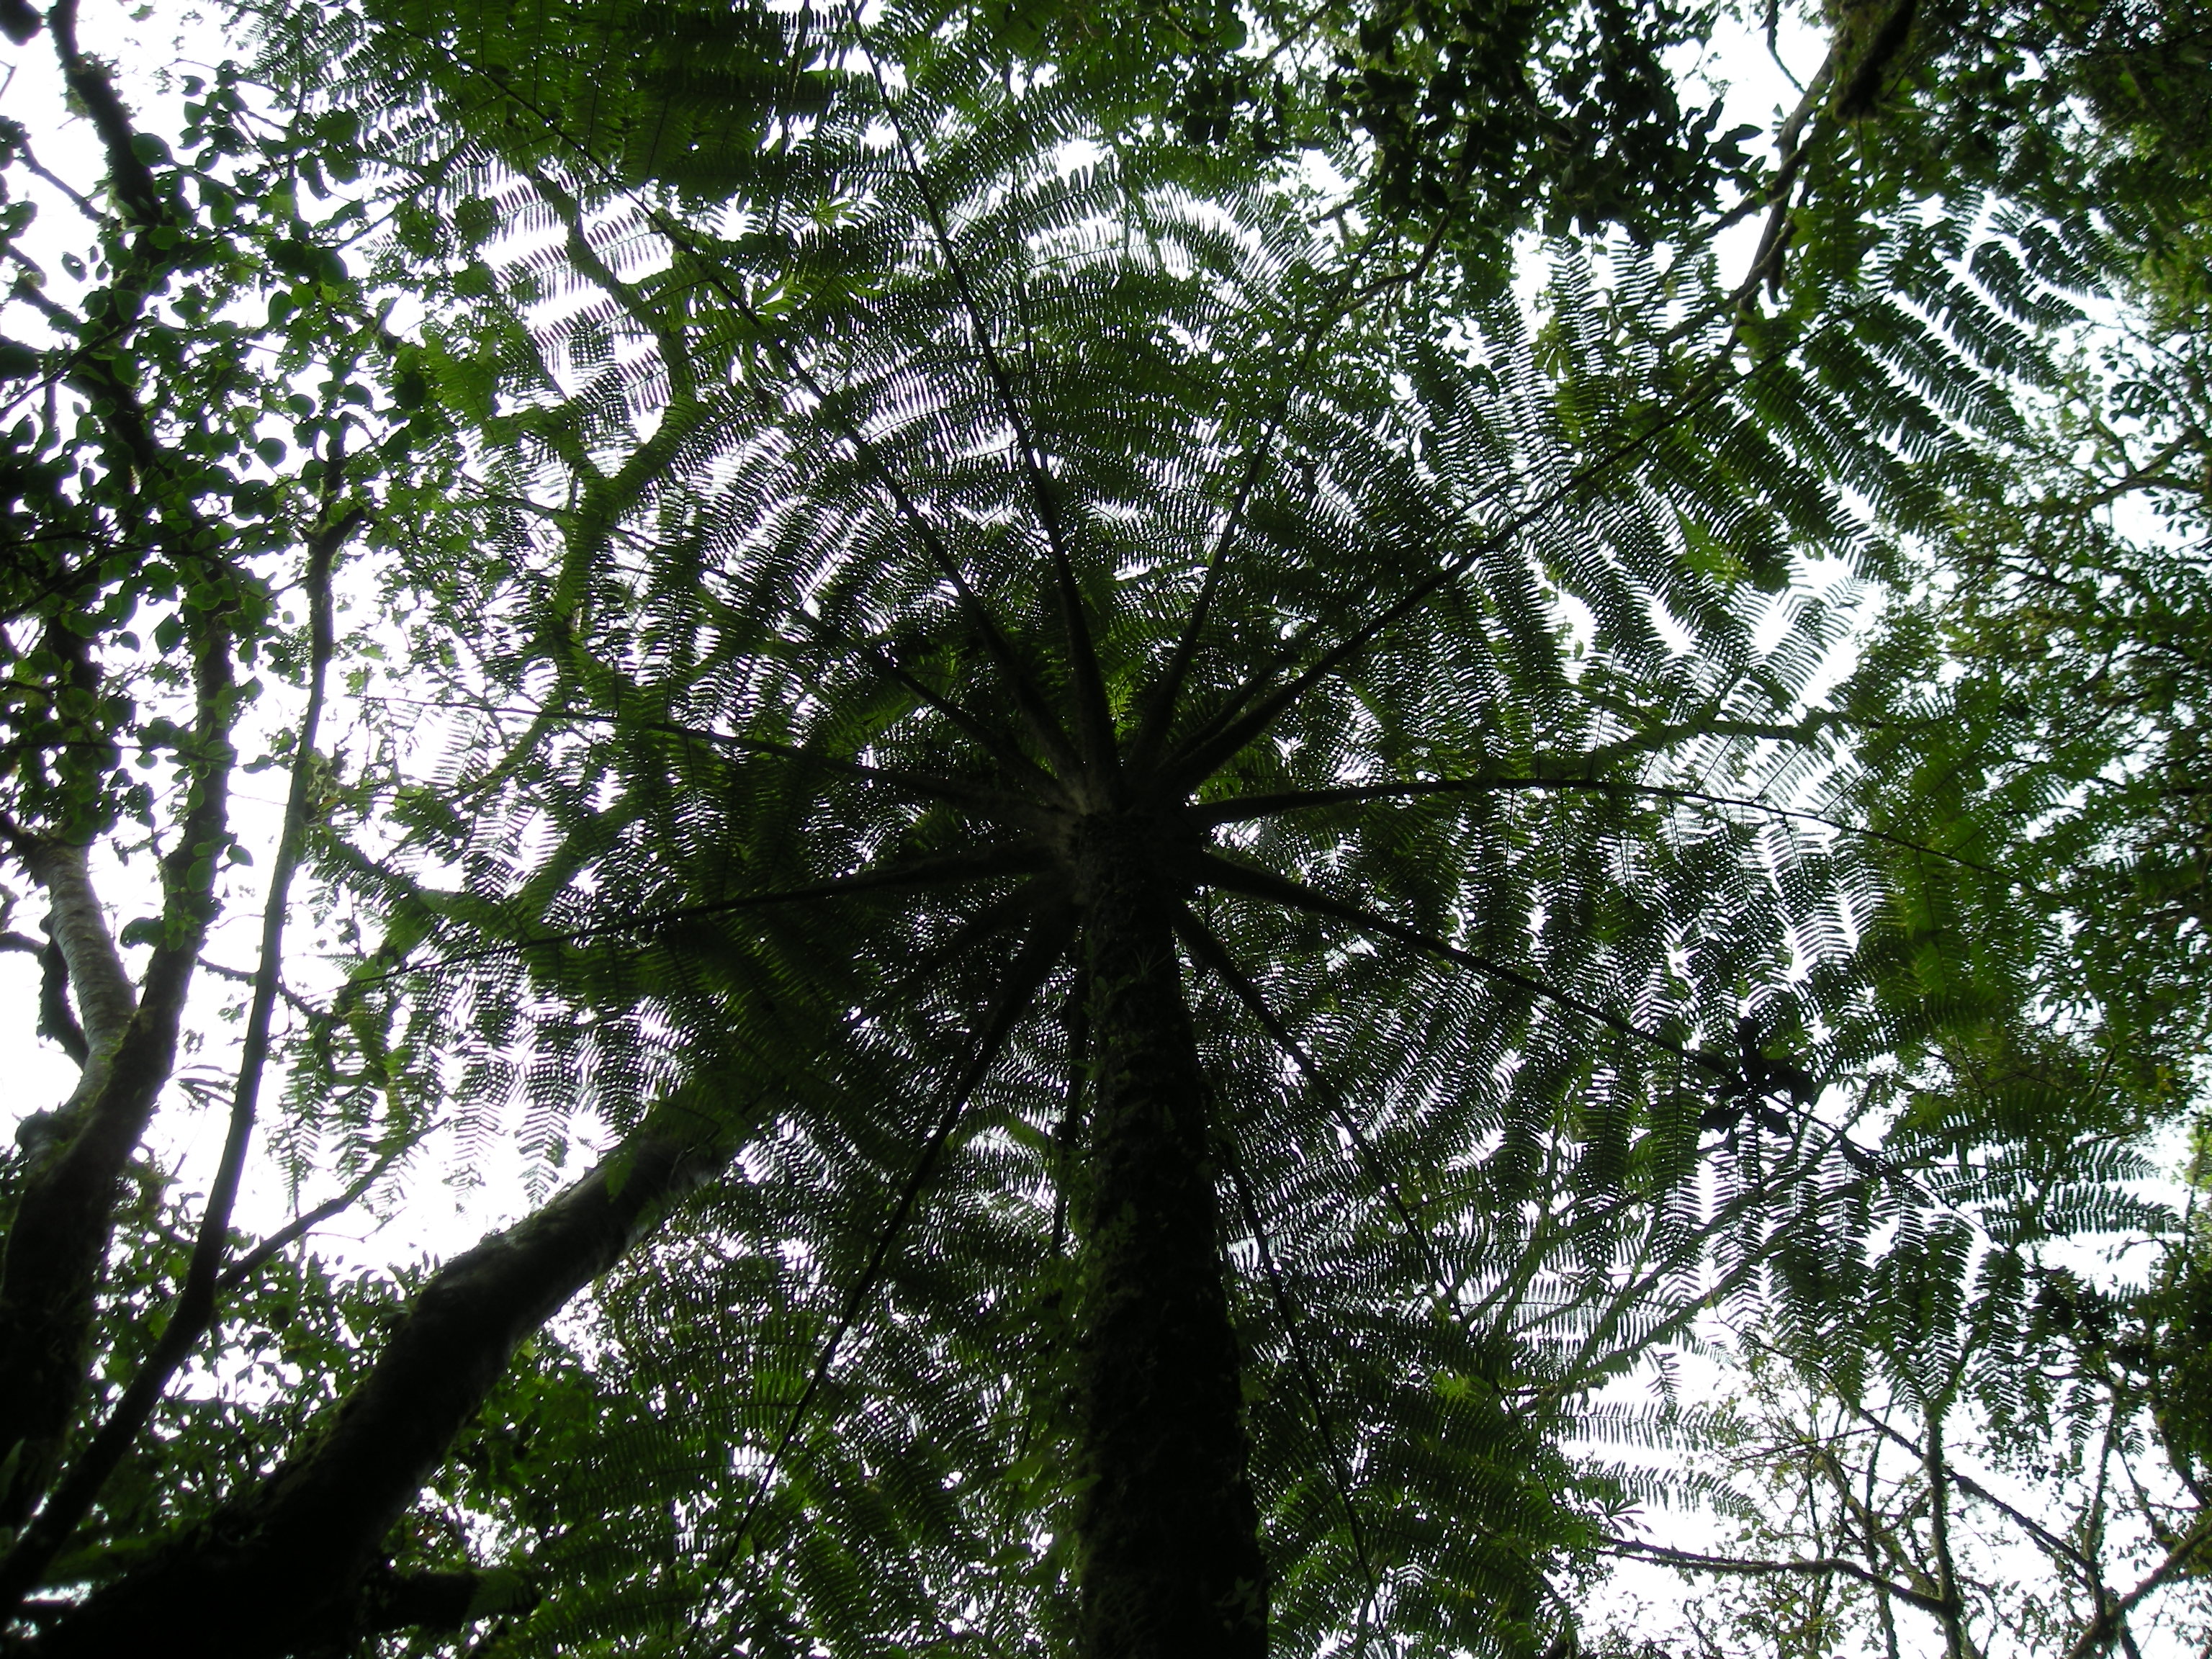 Looking up, Monteverde Cloudforest, Costa Rica.